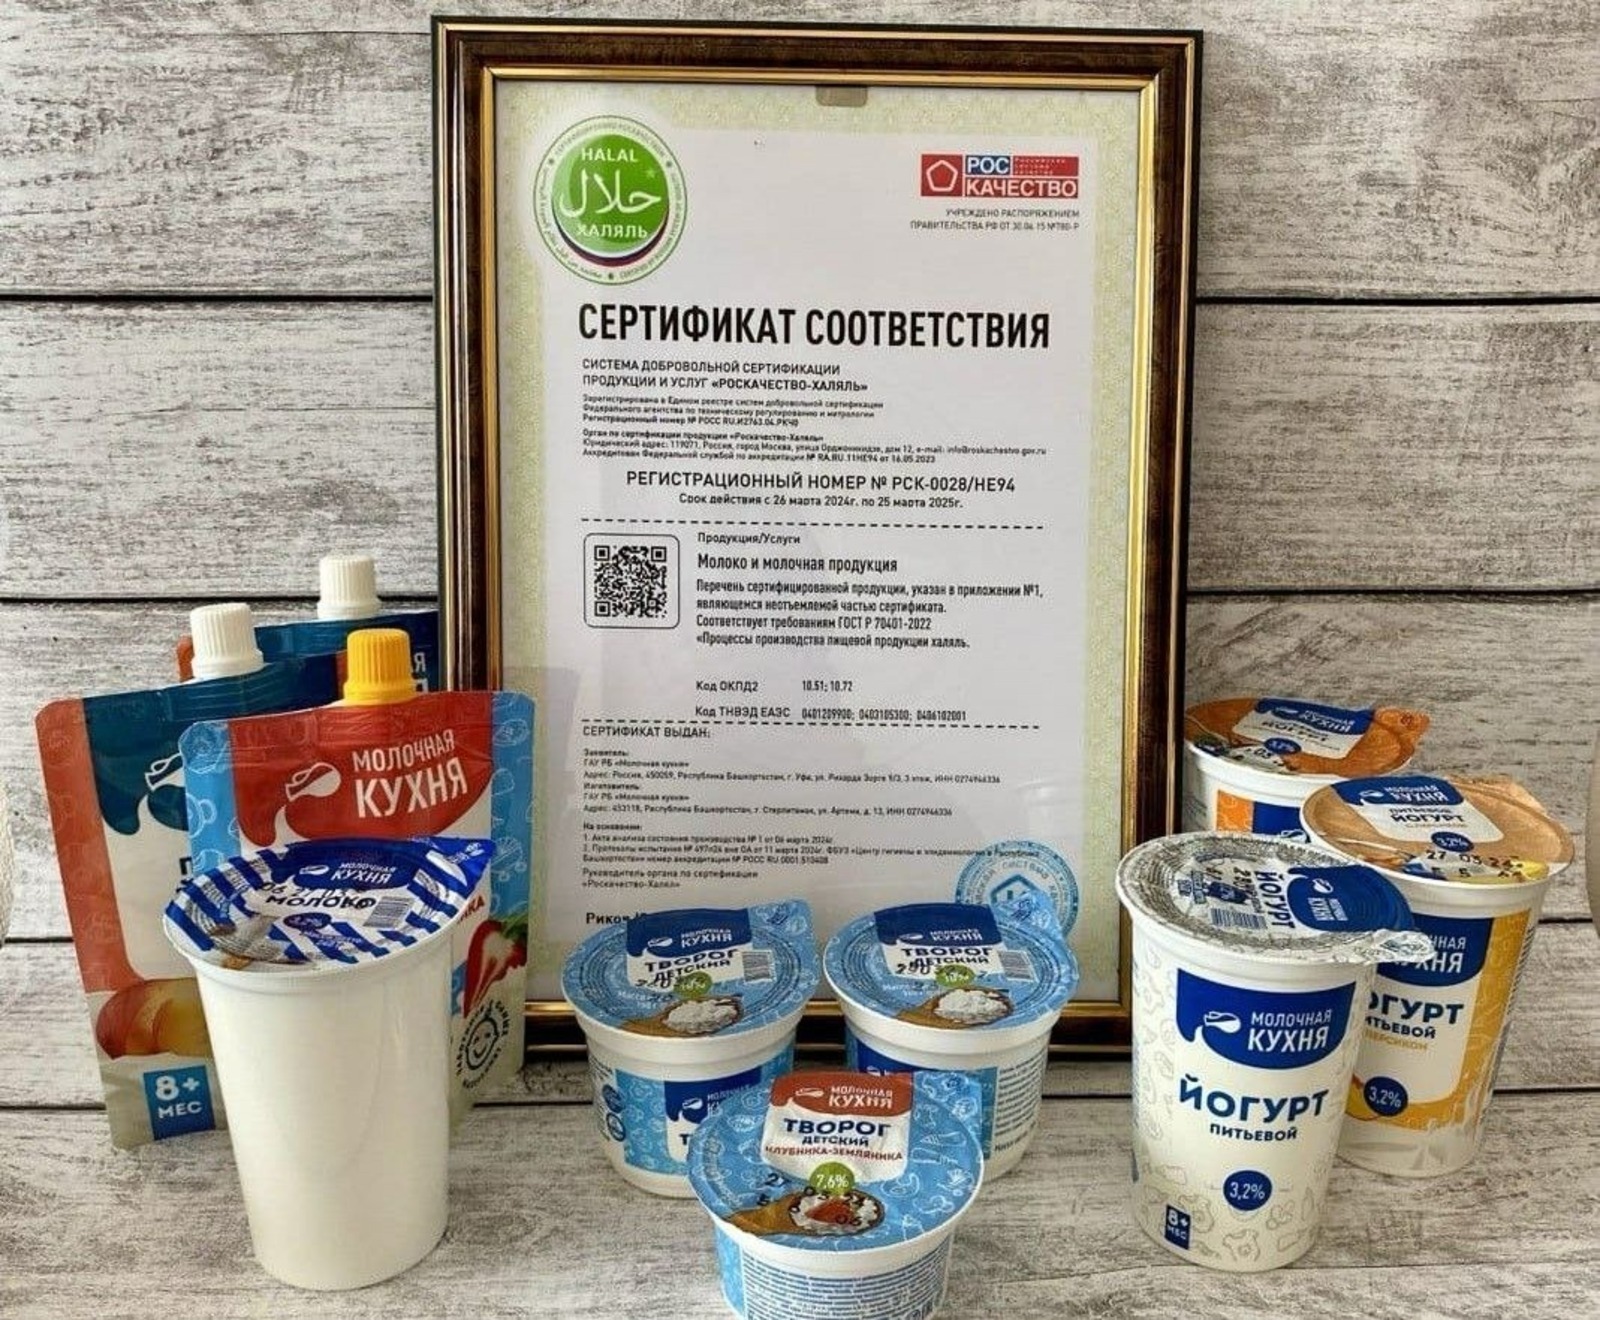 «Молочная кухня» Башкирии получила сертификат «Роскачество-Халяль» - Хабиров